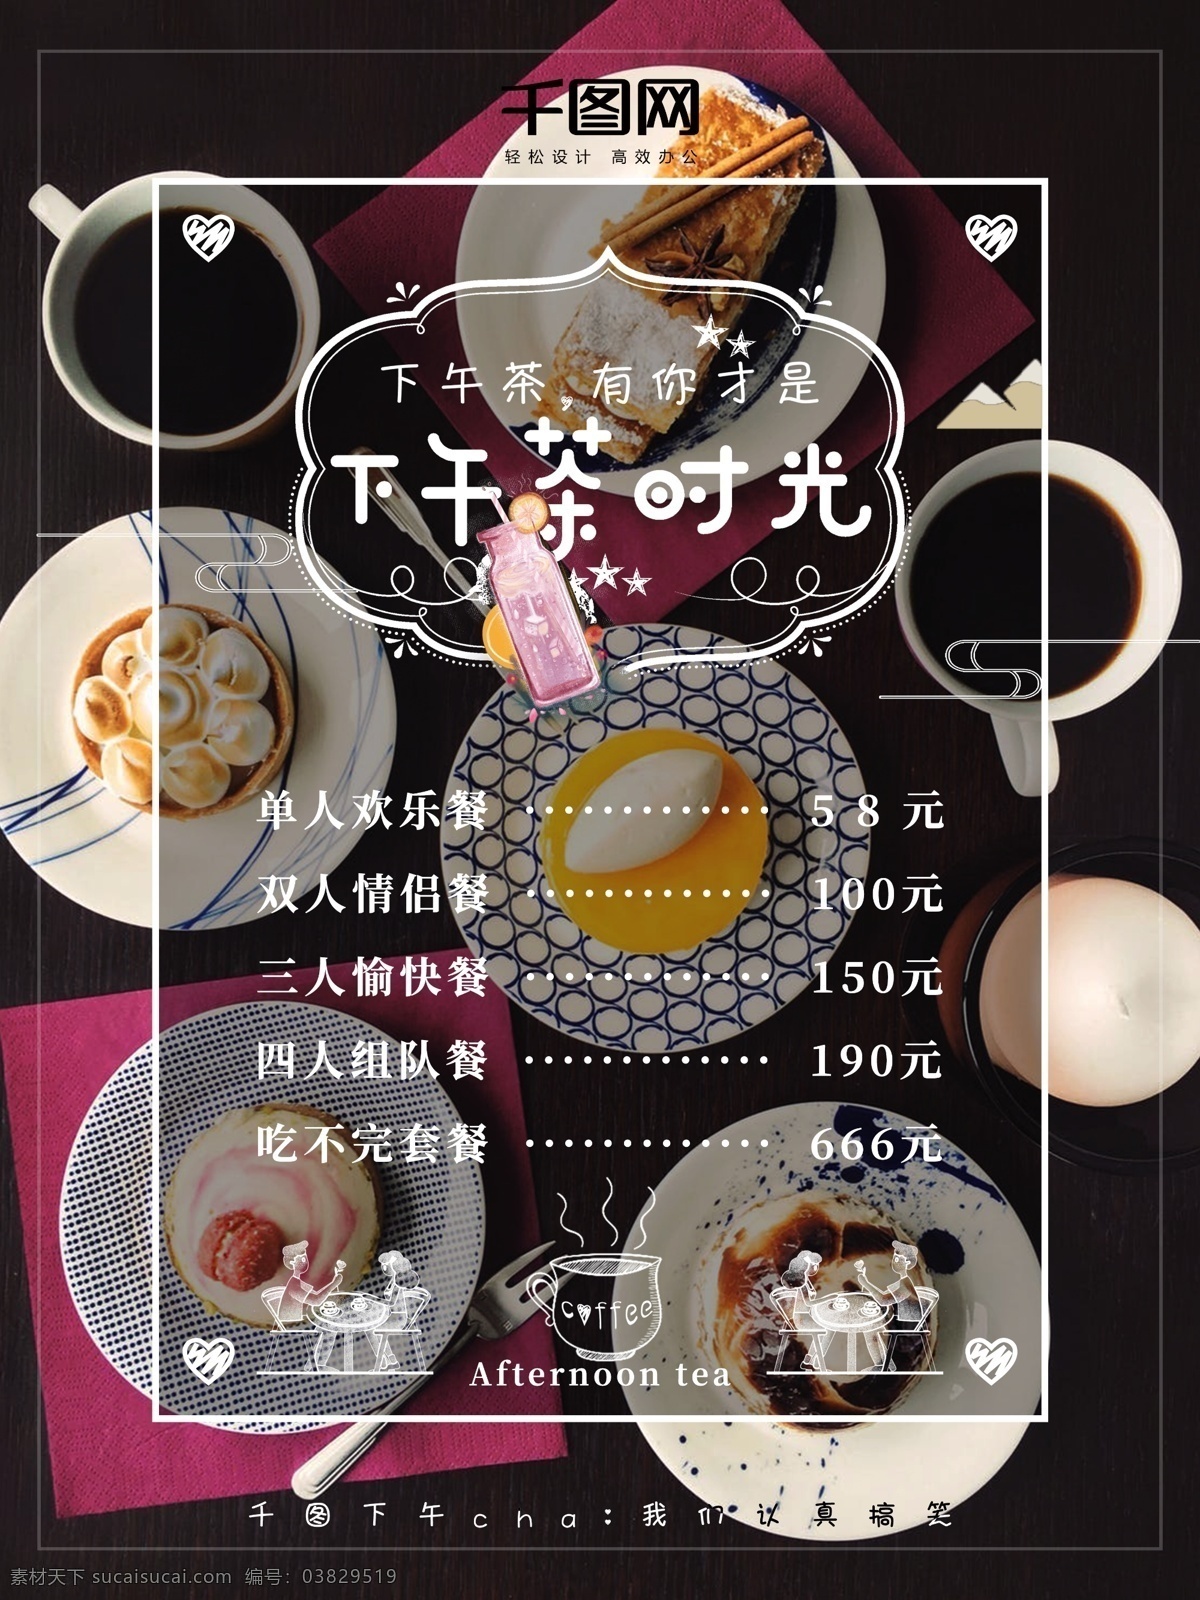 原创 简约 餐桌 创意 下午 茶 菜单 海报 下午茶